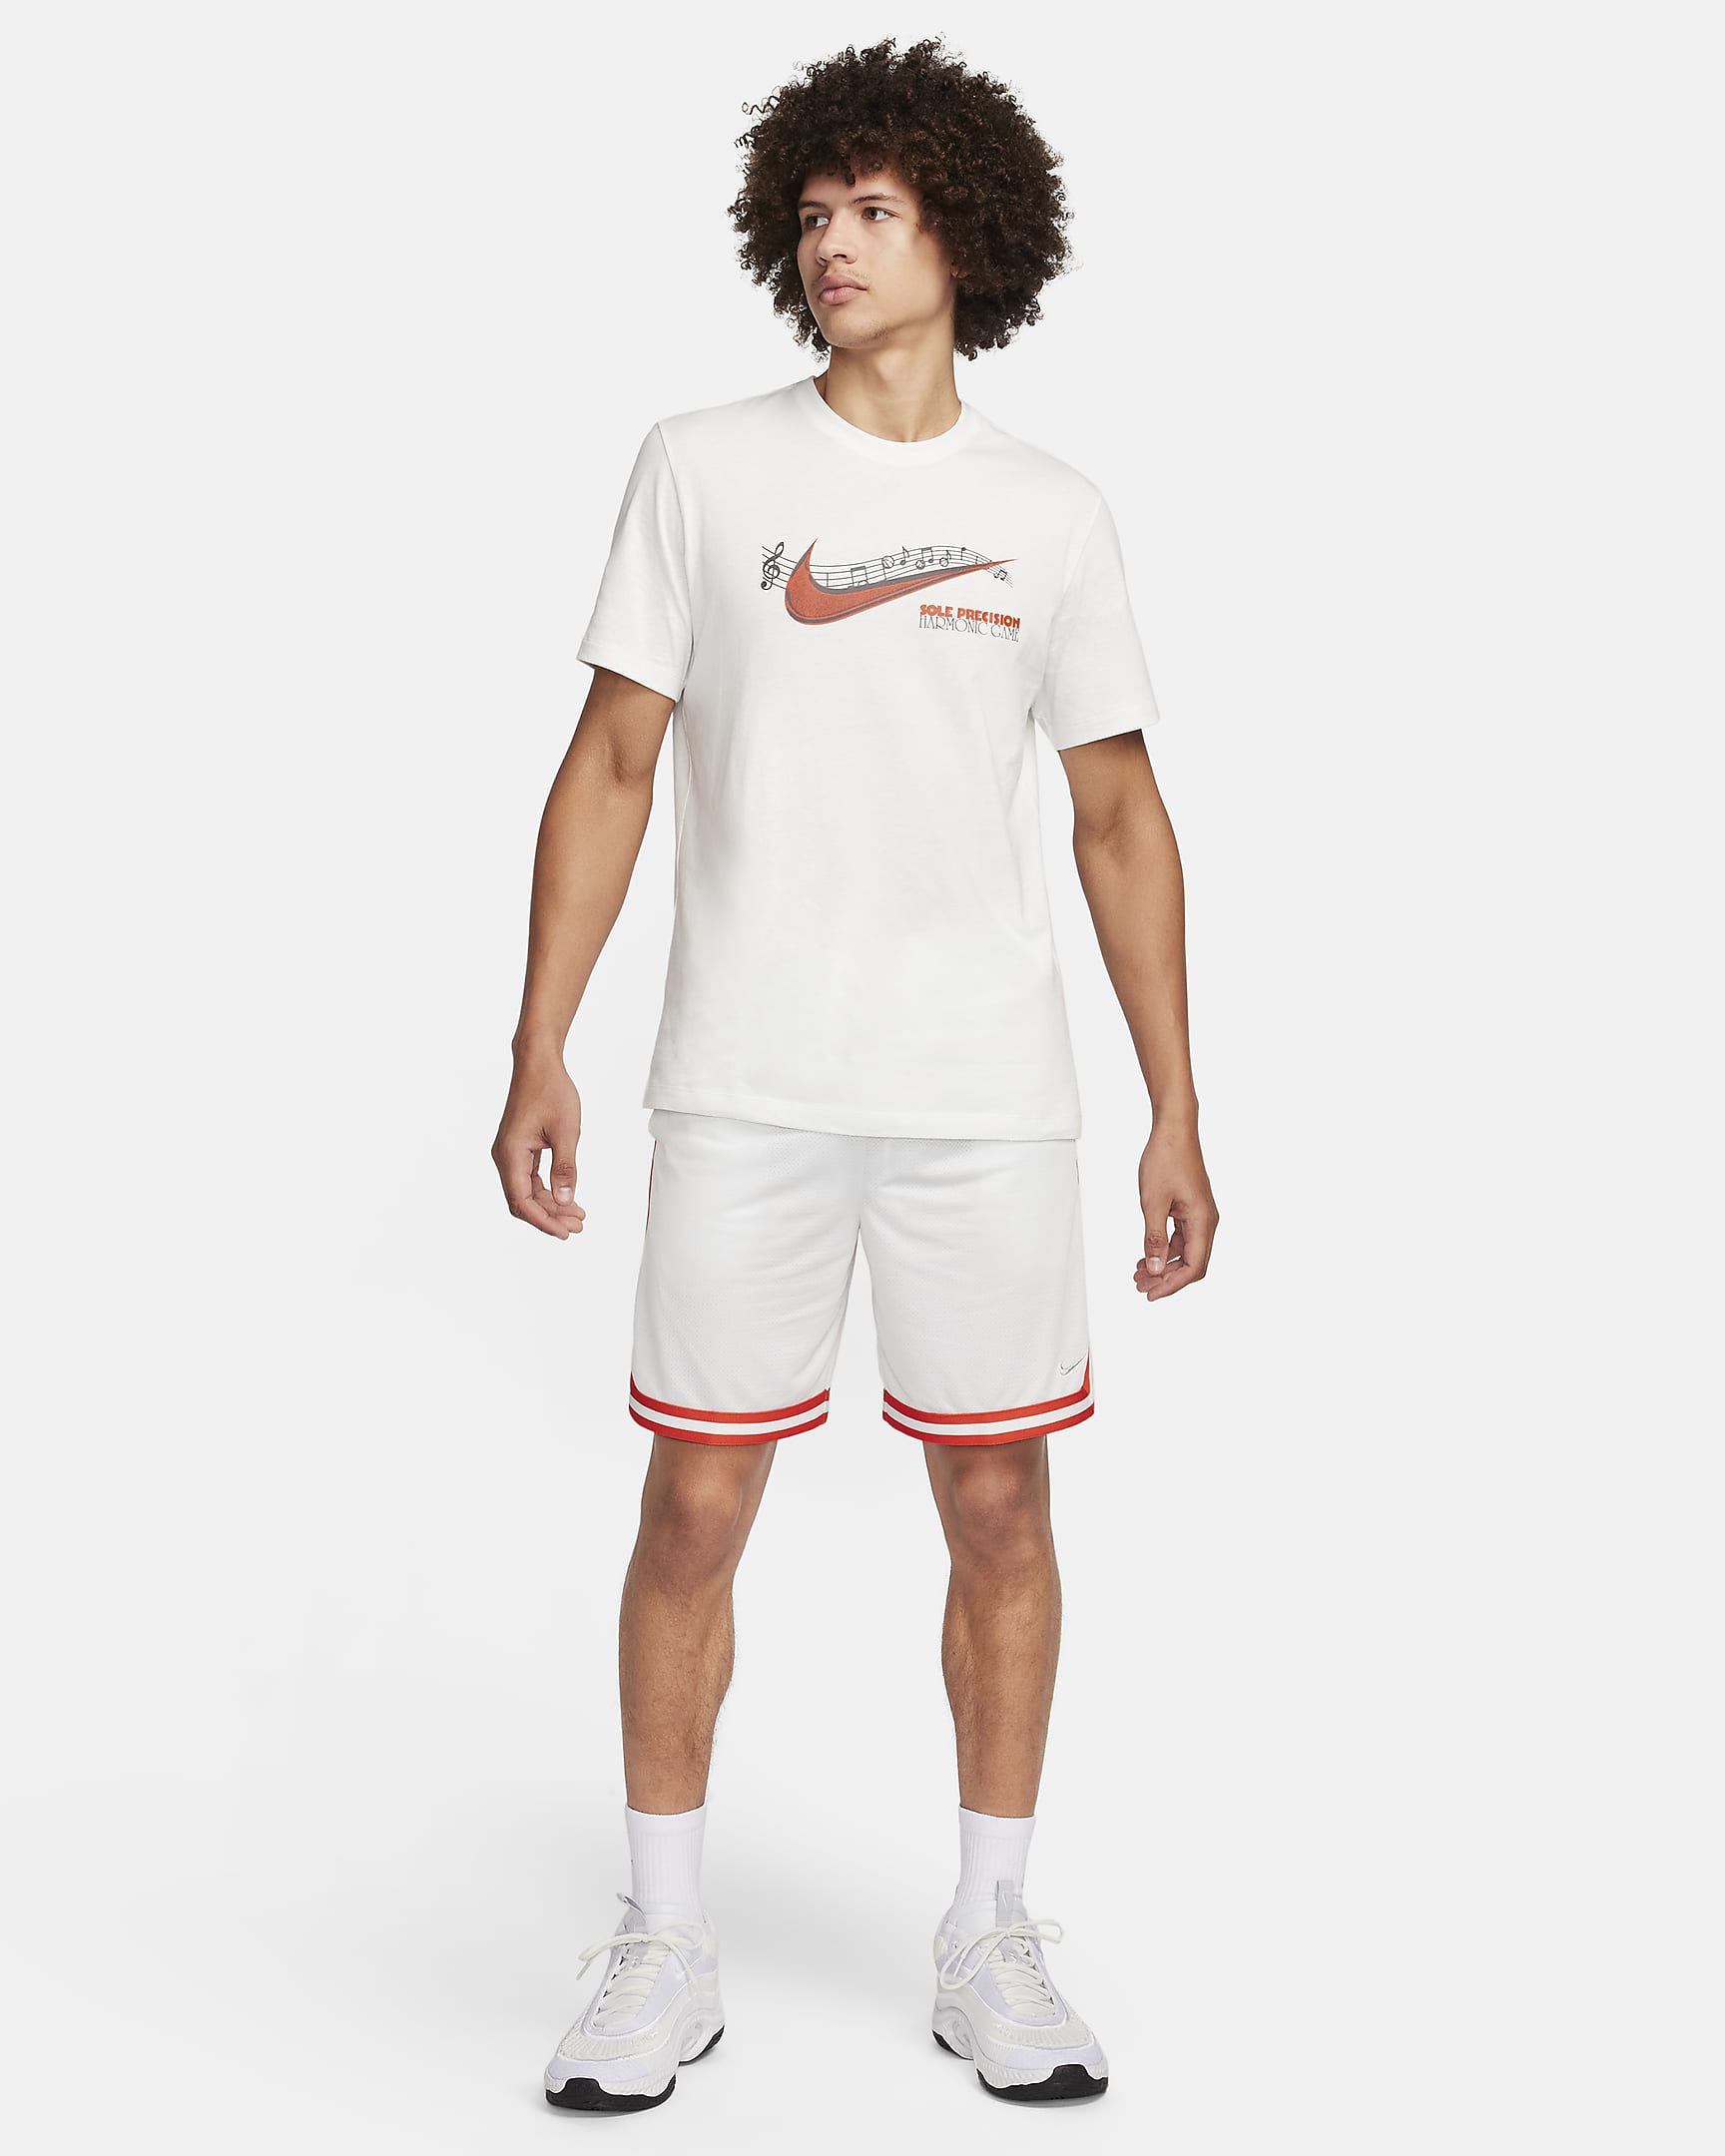 Nike Men's Basketball T-Shirt. Nike AT